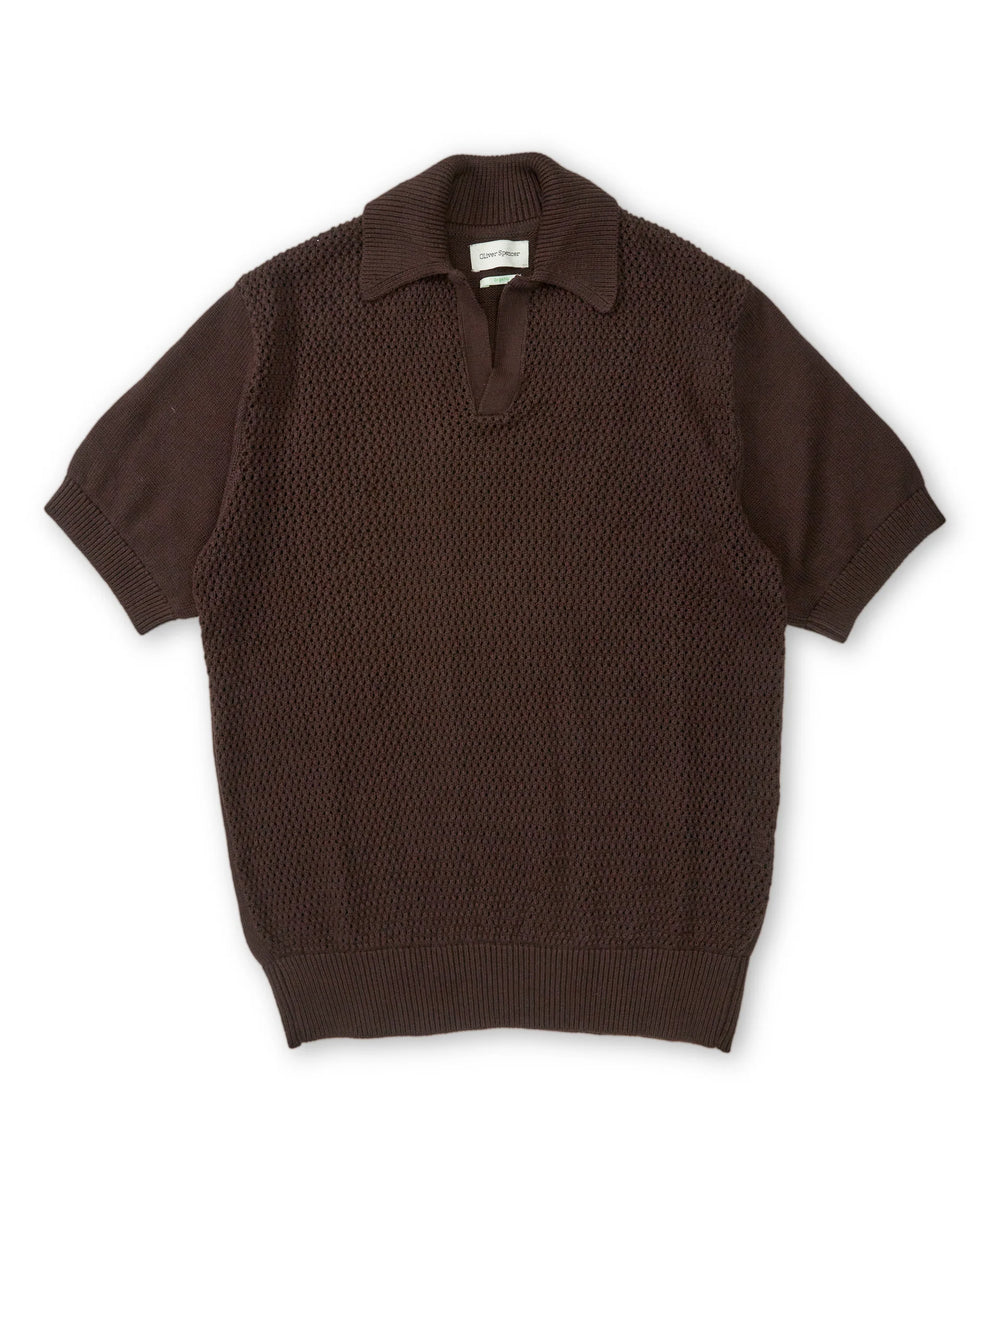 Penhale S/S Polo Shirt - Tamar Brown